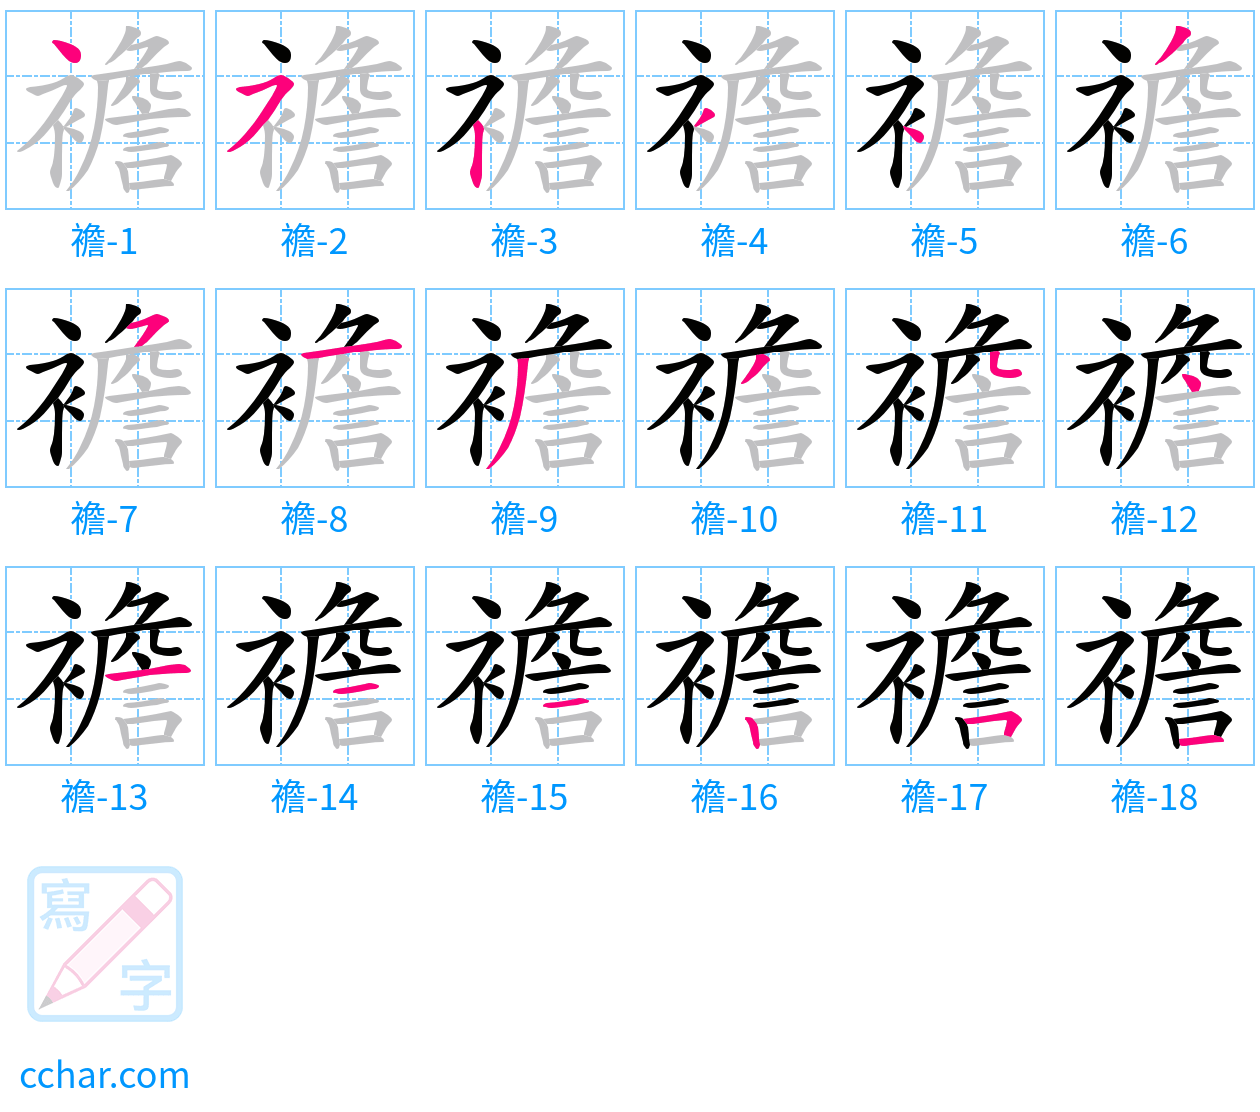 襜 stroke order step-by-step diagram